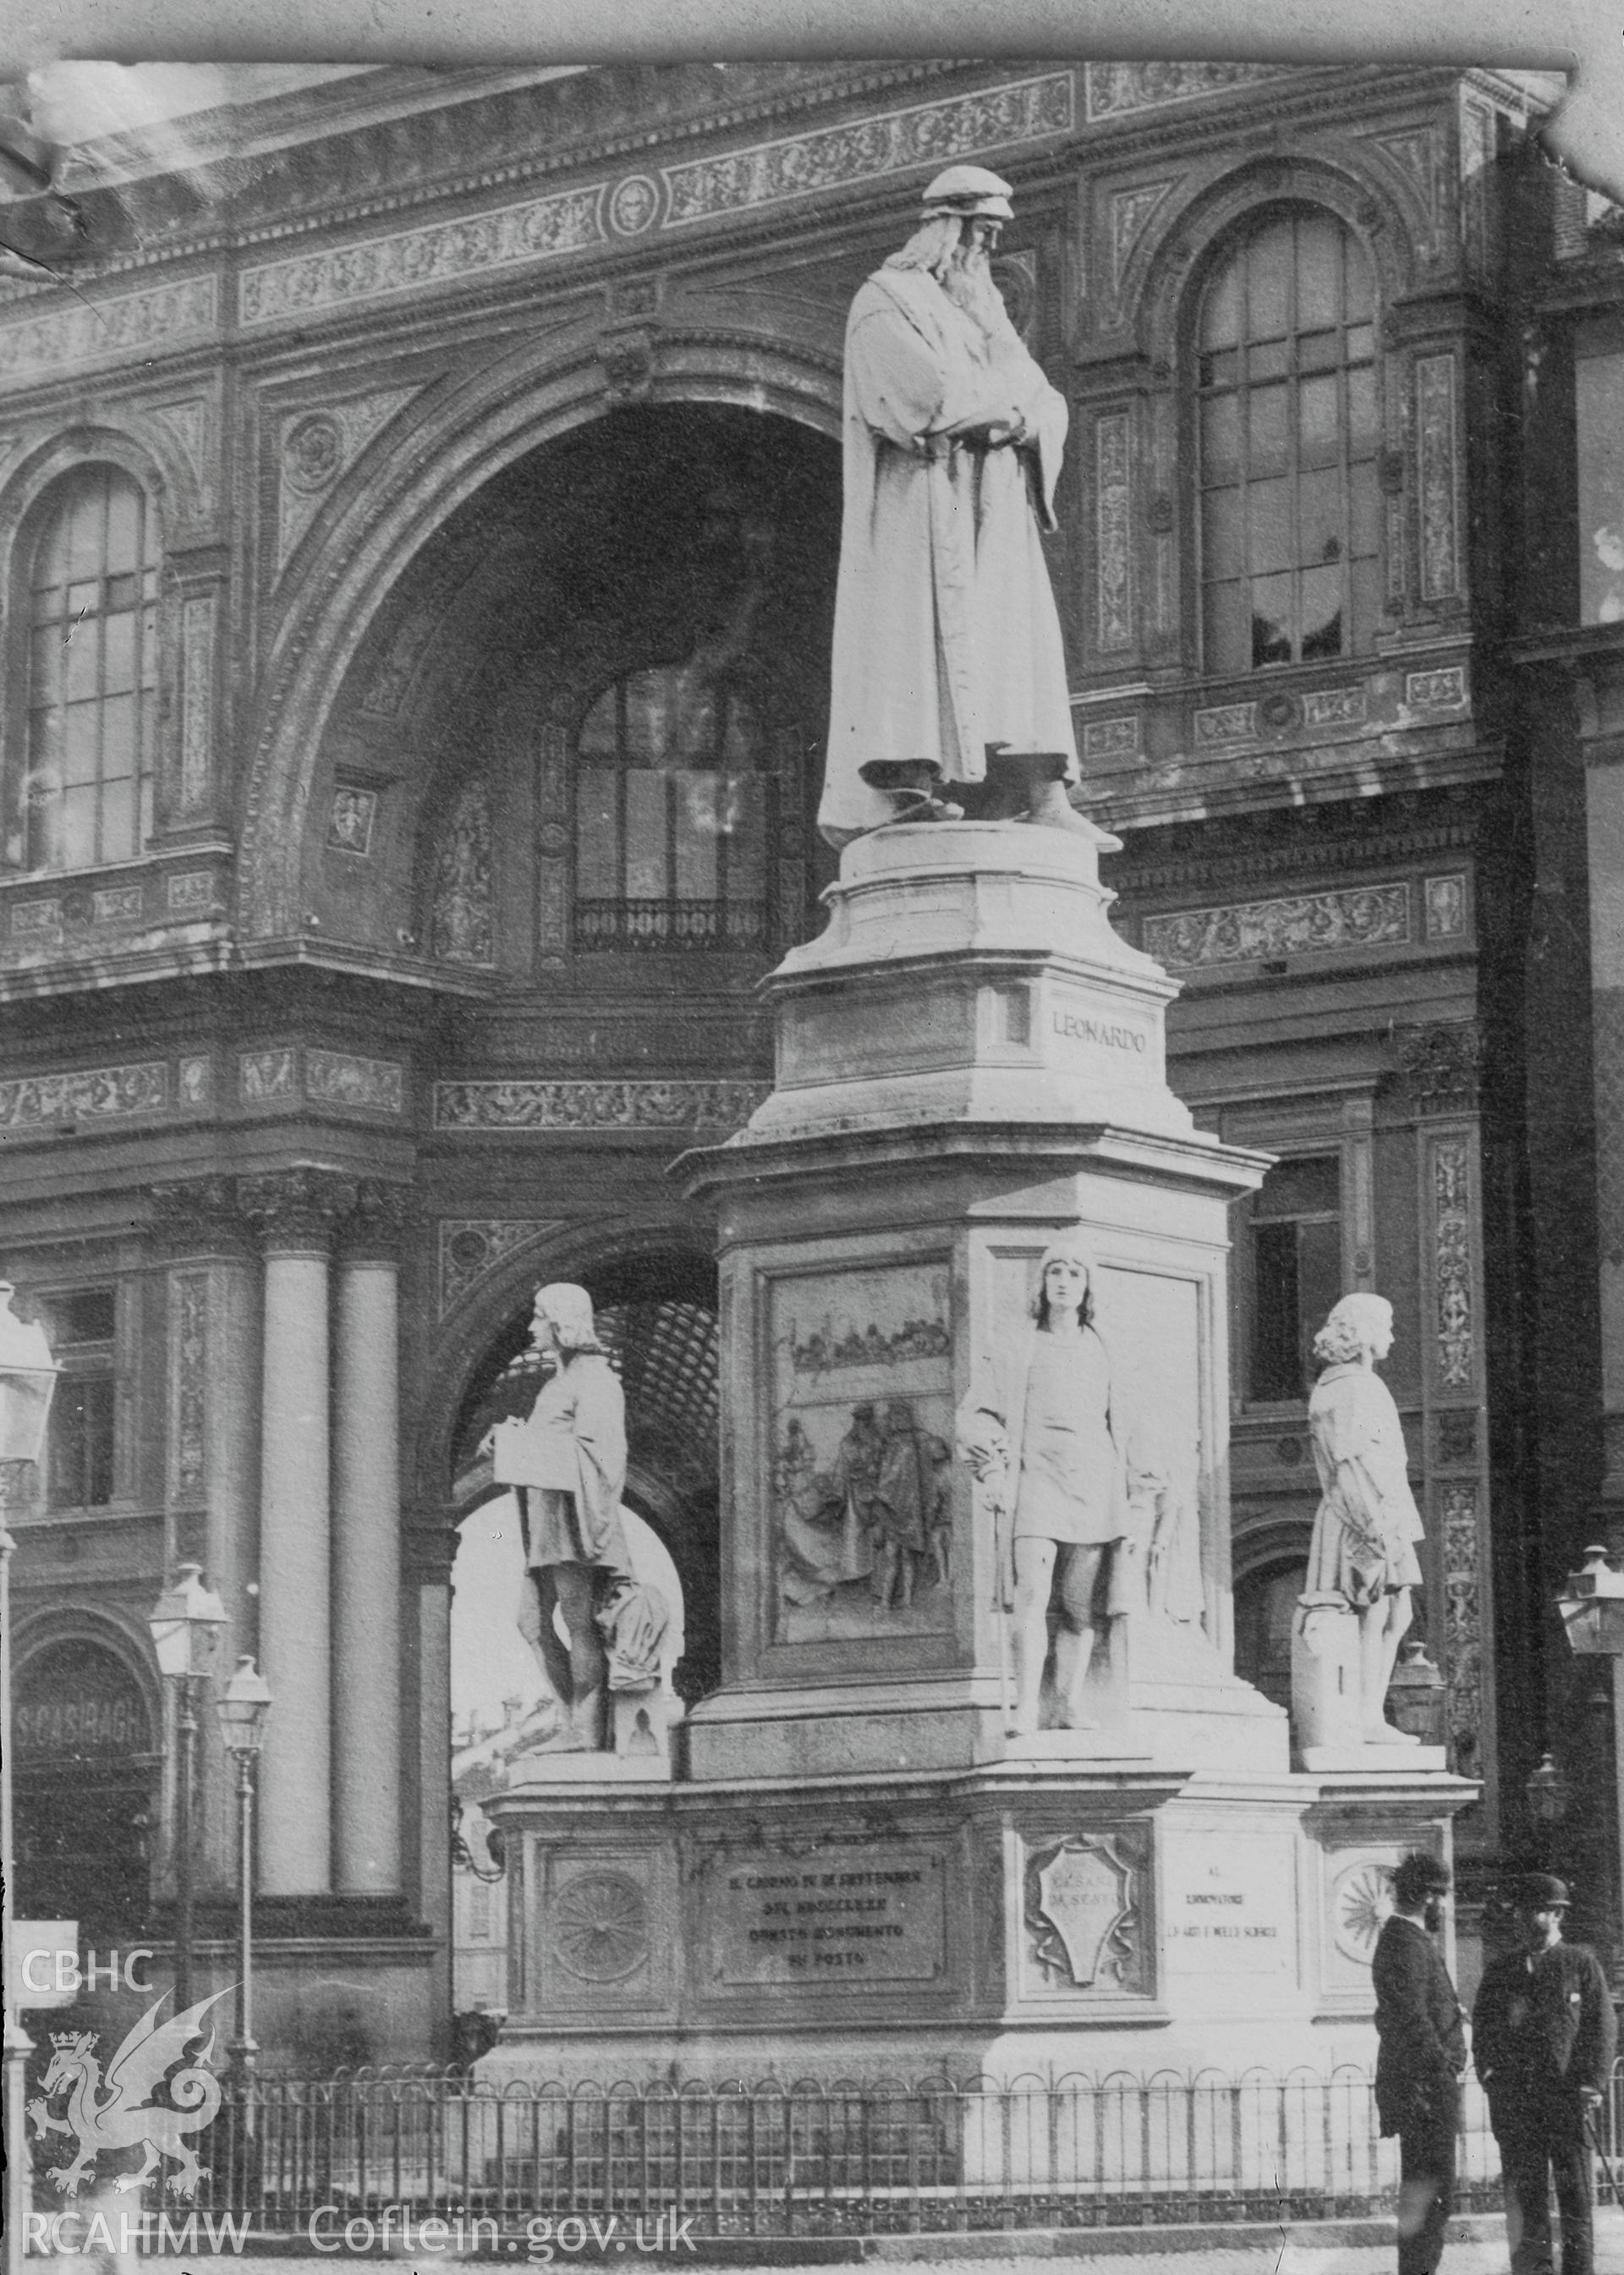 Black and white image dating from c.1910 showing Statua di Leonardo da Vinci at Piazza della Scala, Milan, taken by Emile T. Evans.